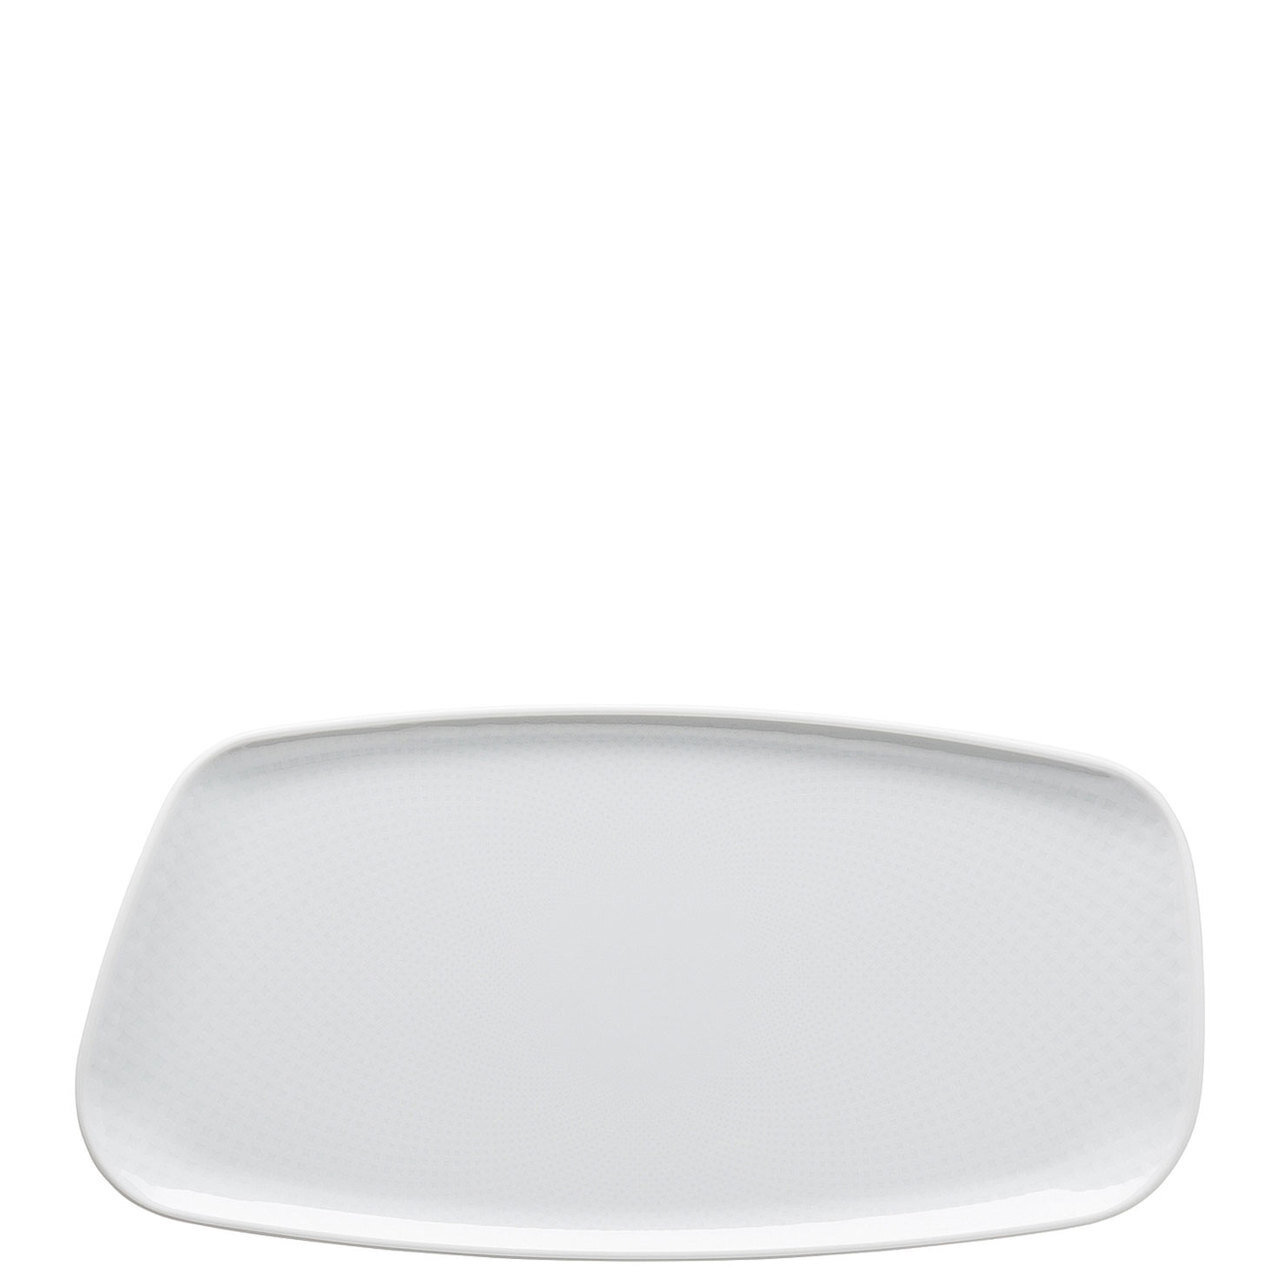 Rosenthal Junto White Platter Rectangular 11 3/4 x 6 Inch